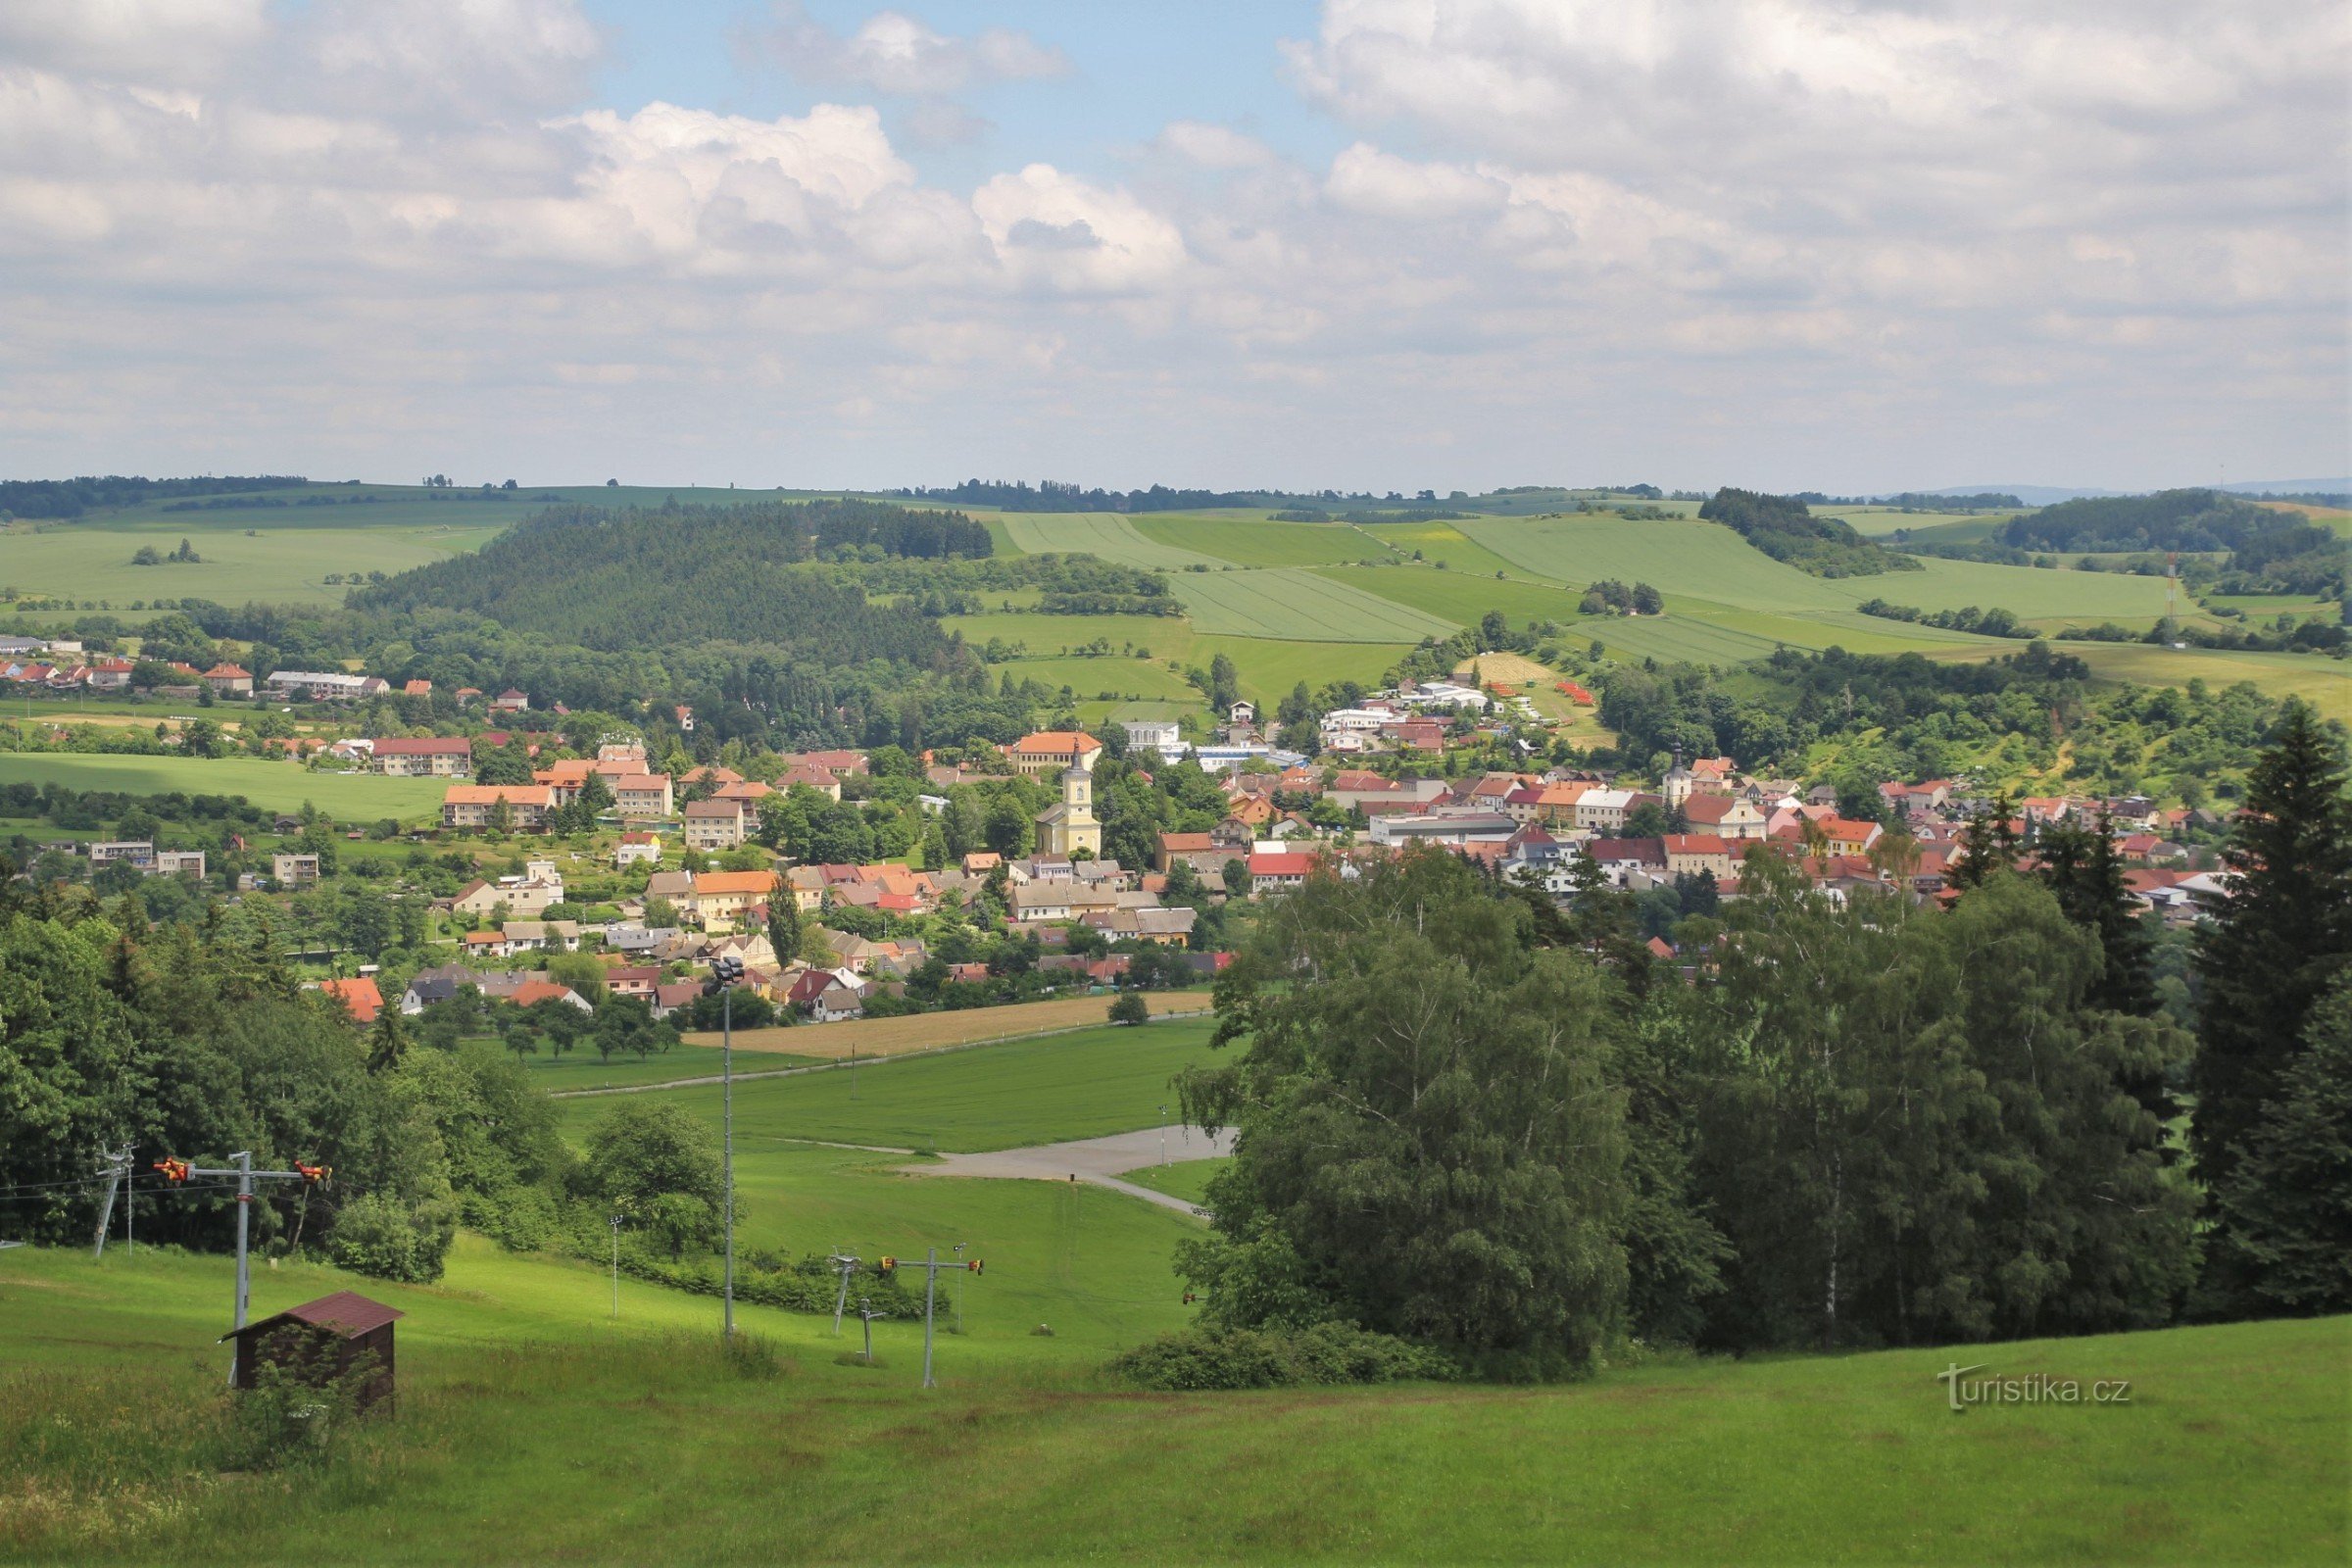 Blick auf die Stadt Olešnice vom Aussichtsturm